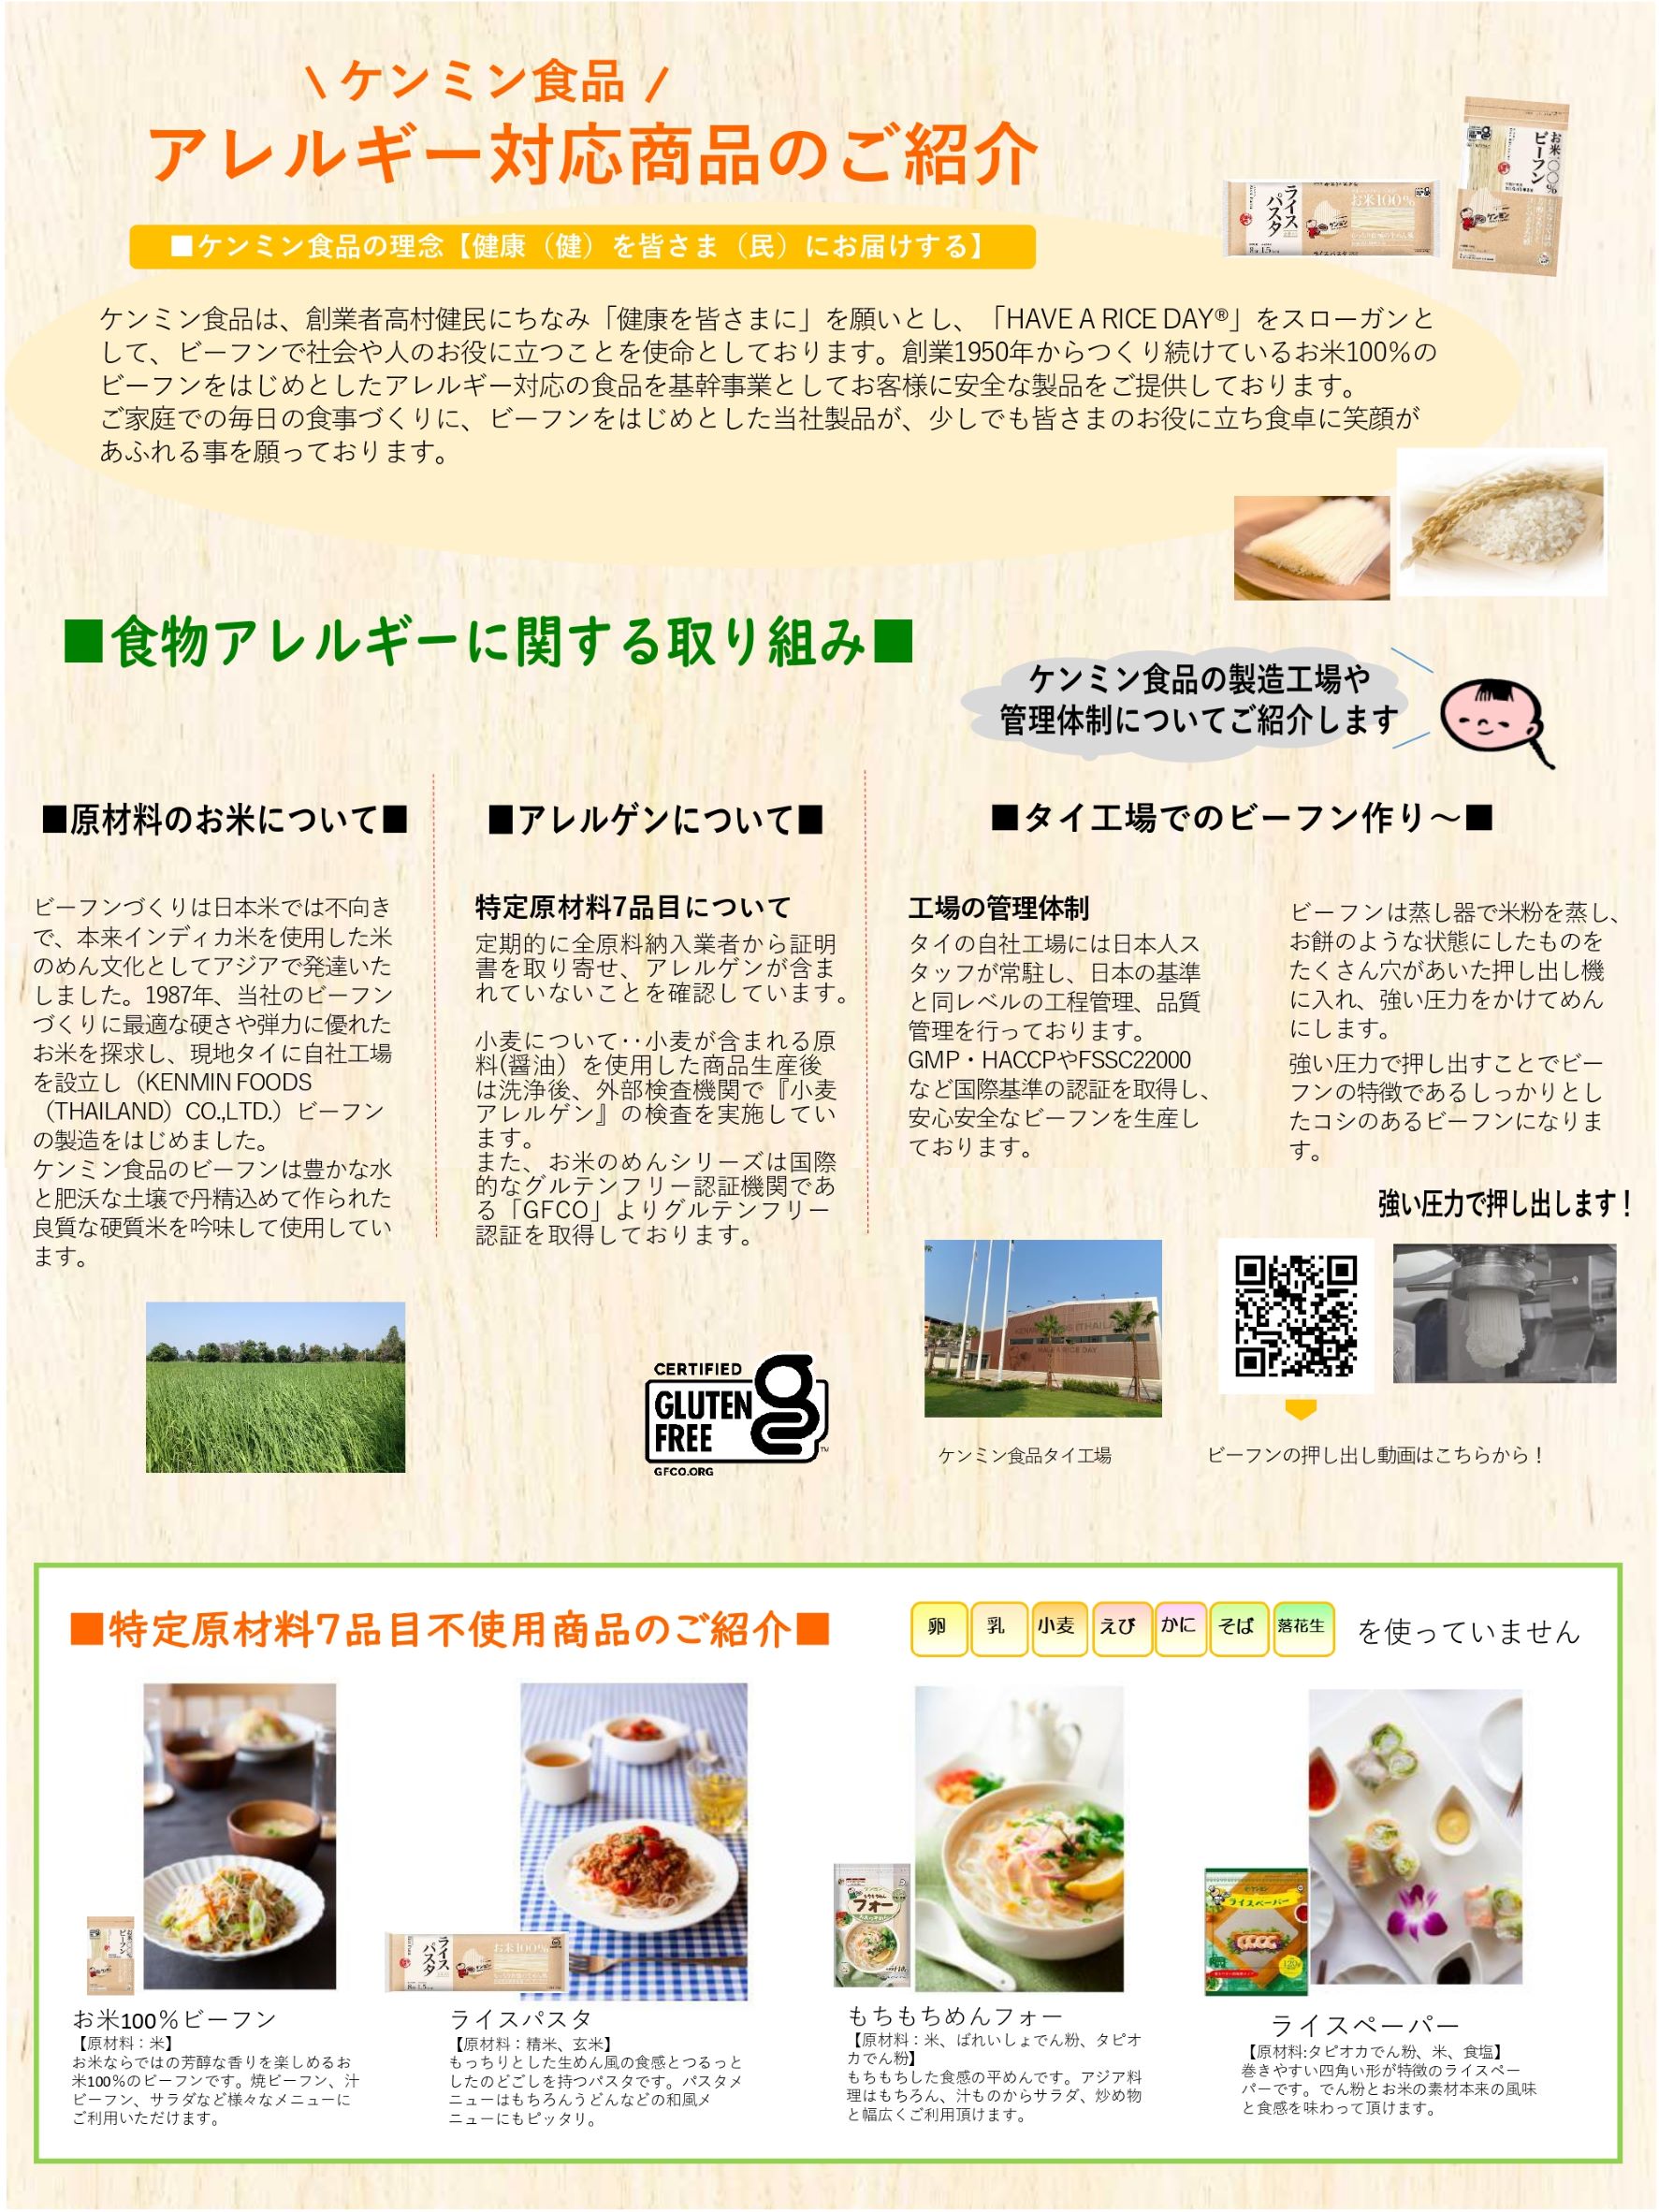 ケンミン食品紹介資料①22.02 _page-0001